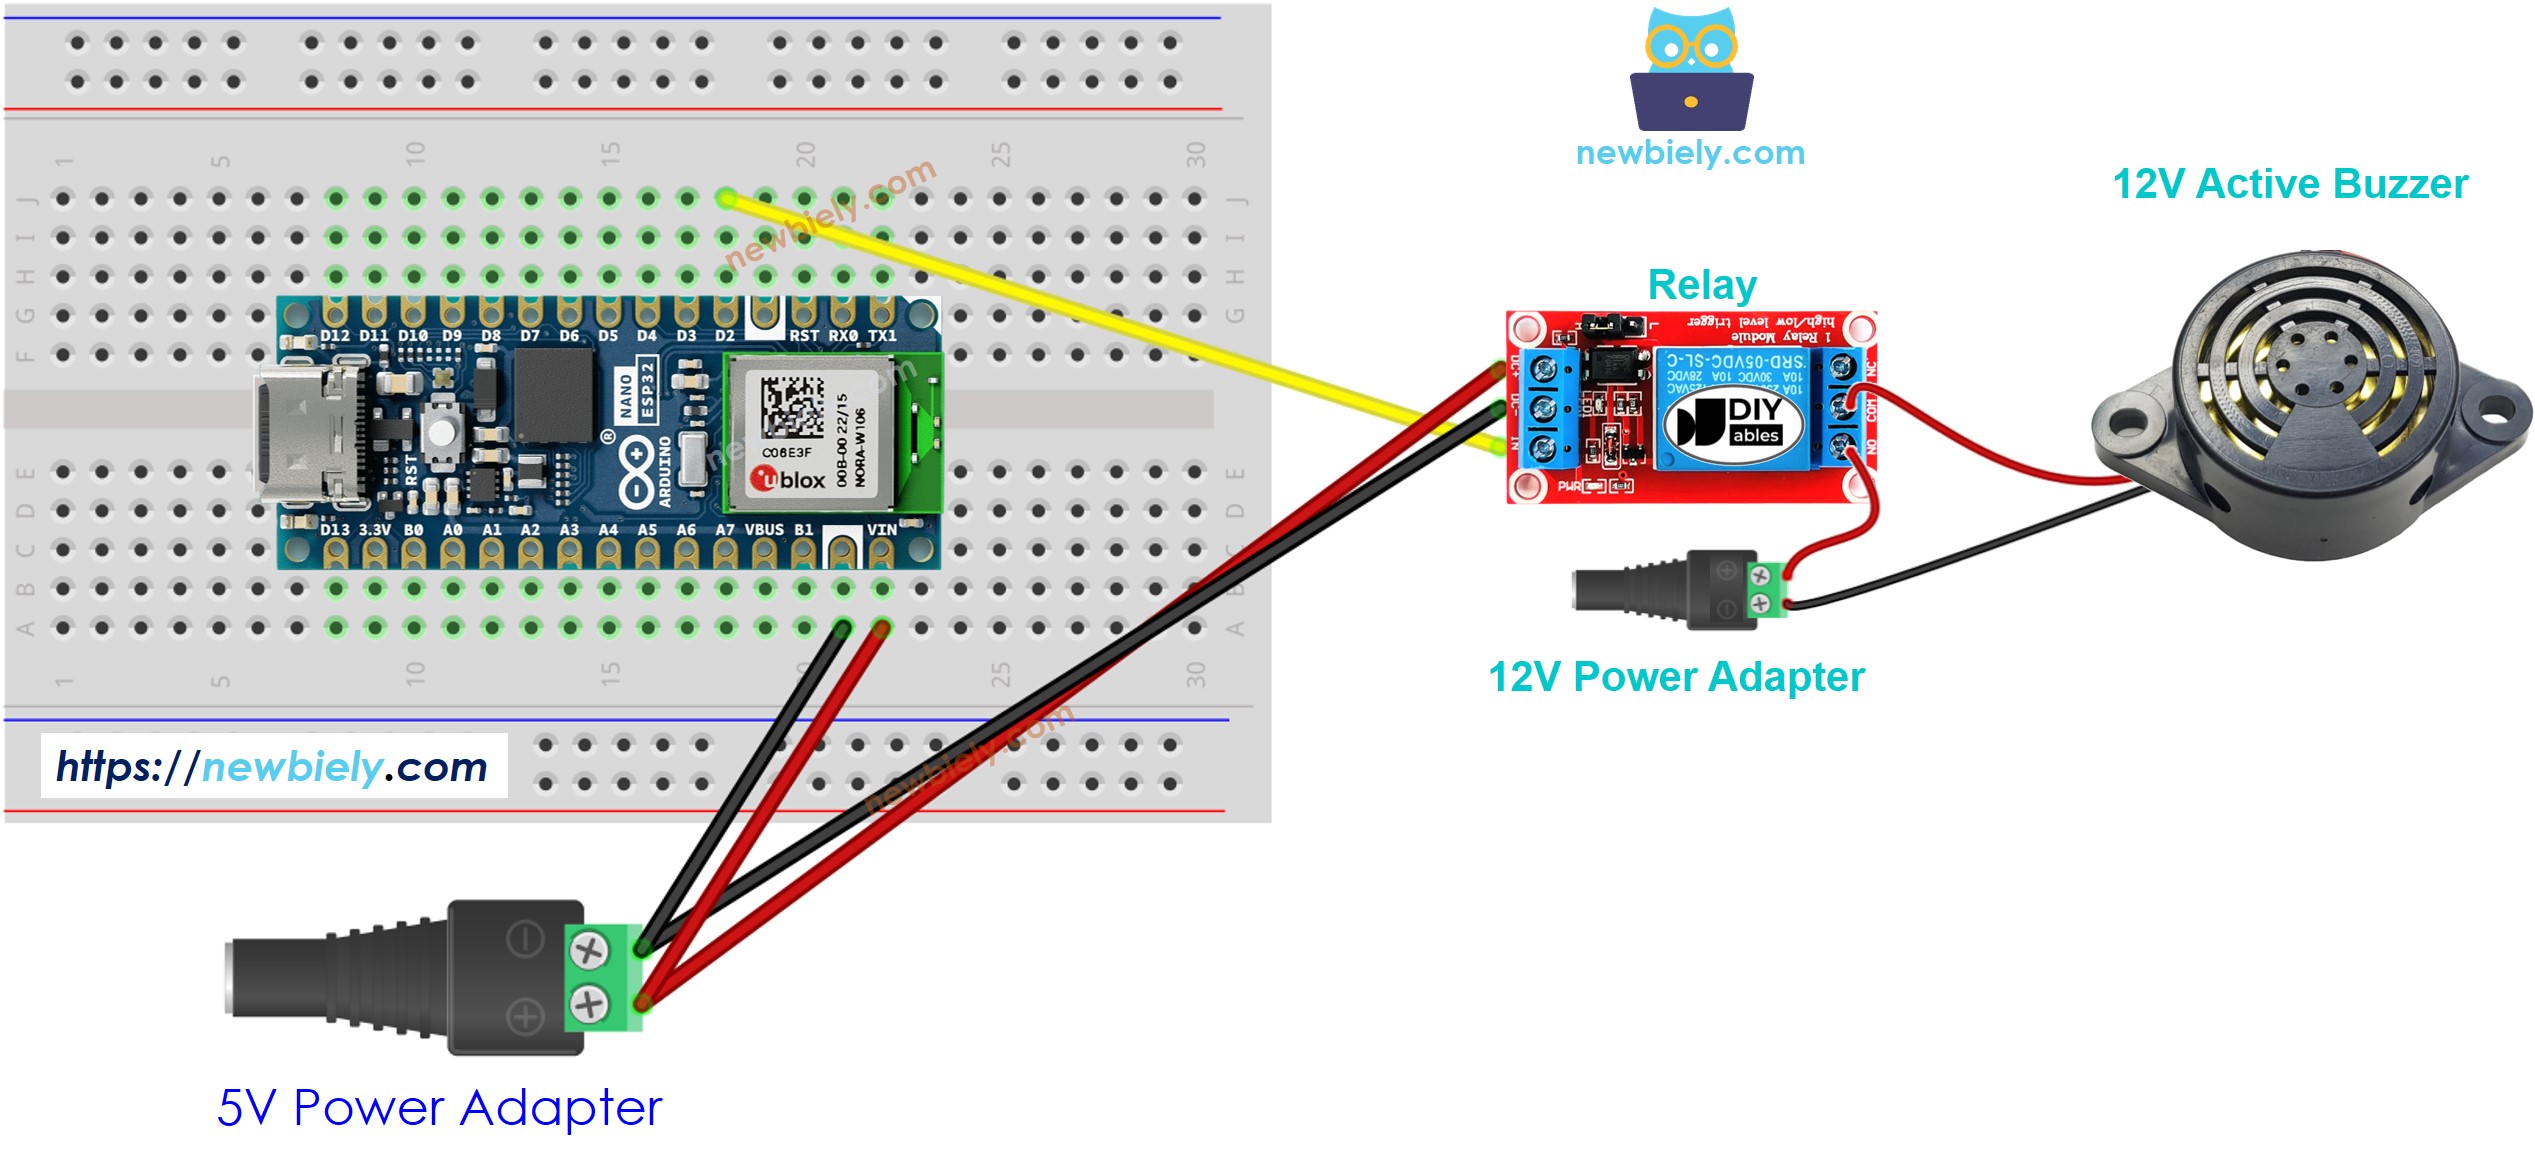 The wiring diagram between Arduino Nano ESP32 and 12V Active Buzzer